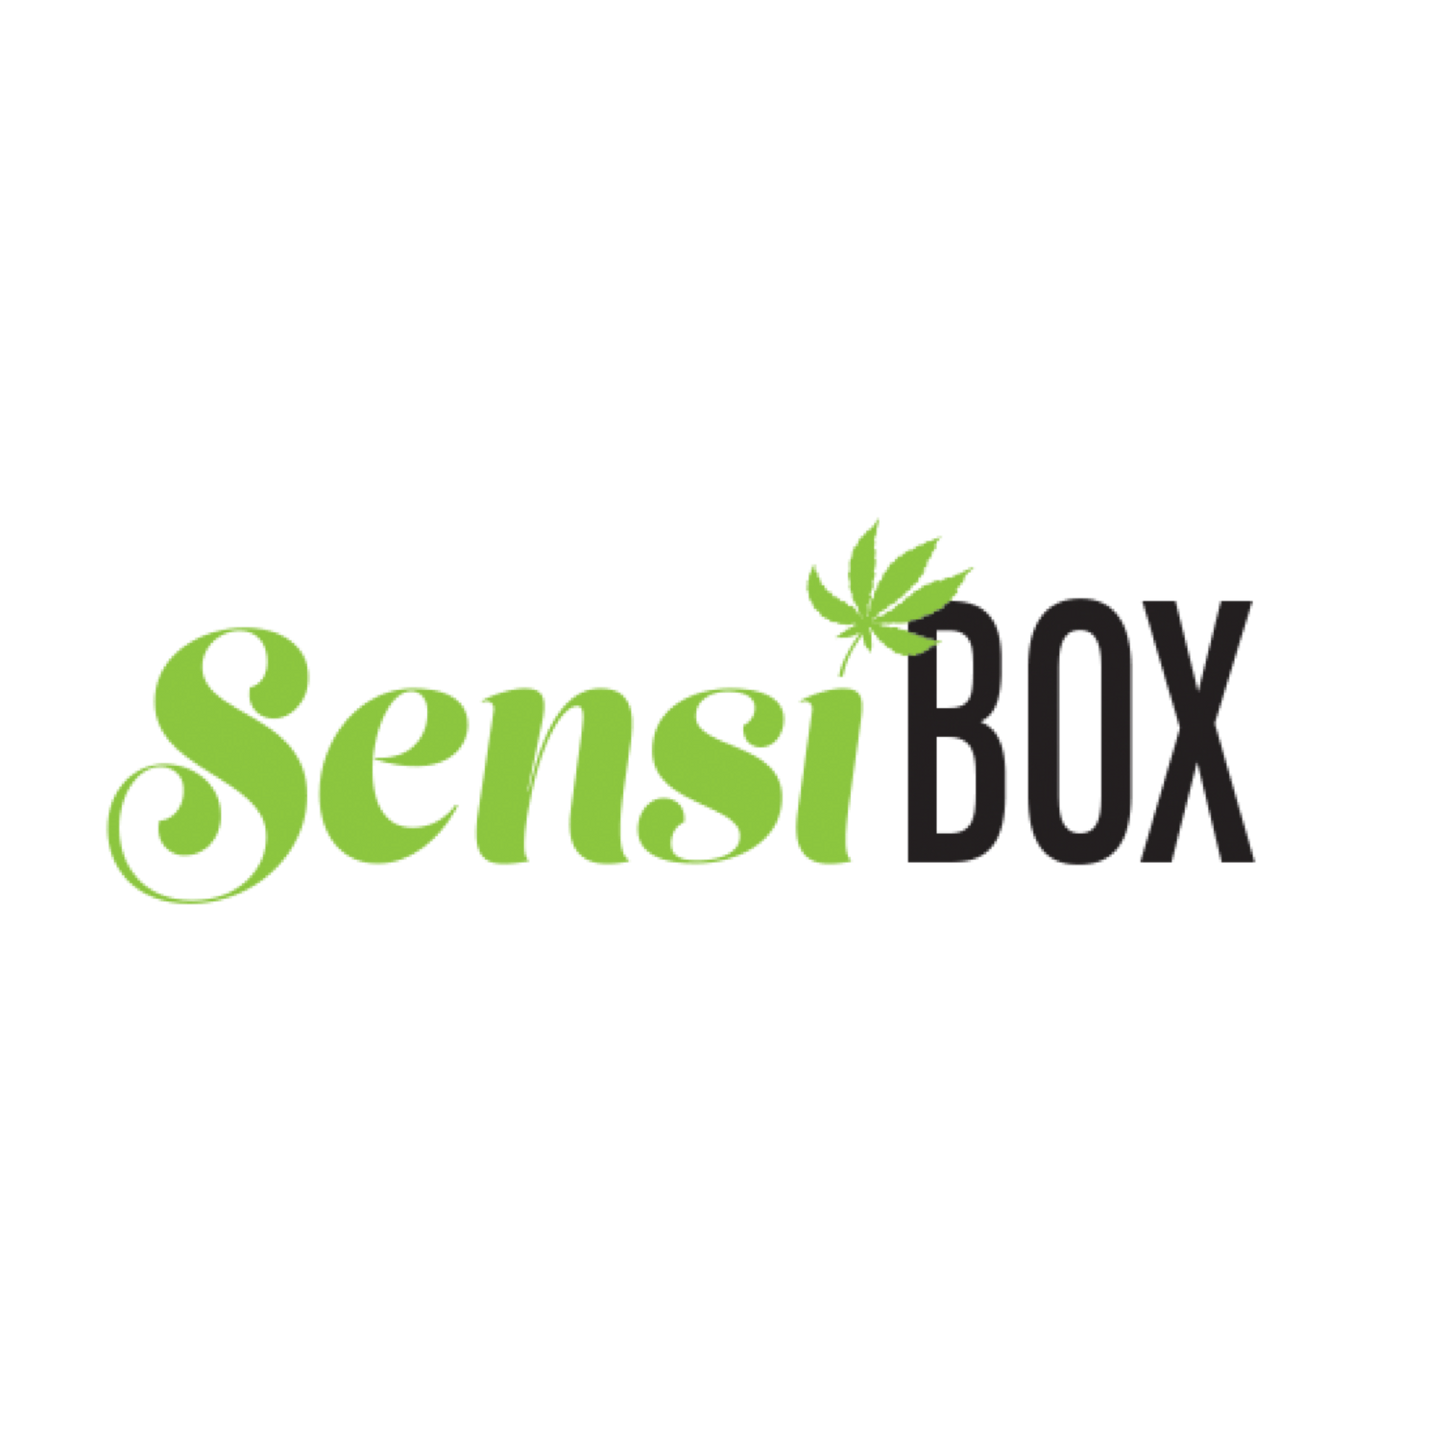 SensiBox Gift Cards